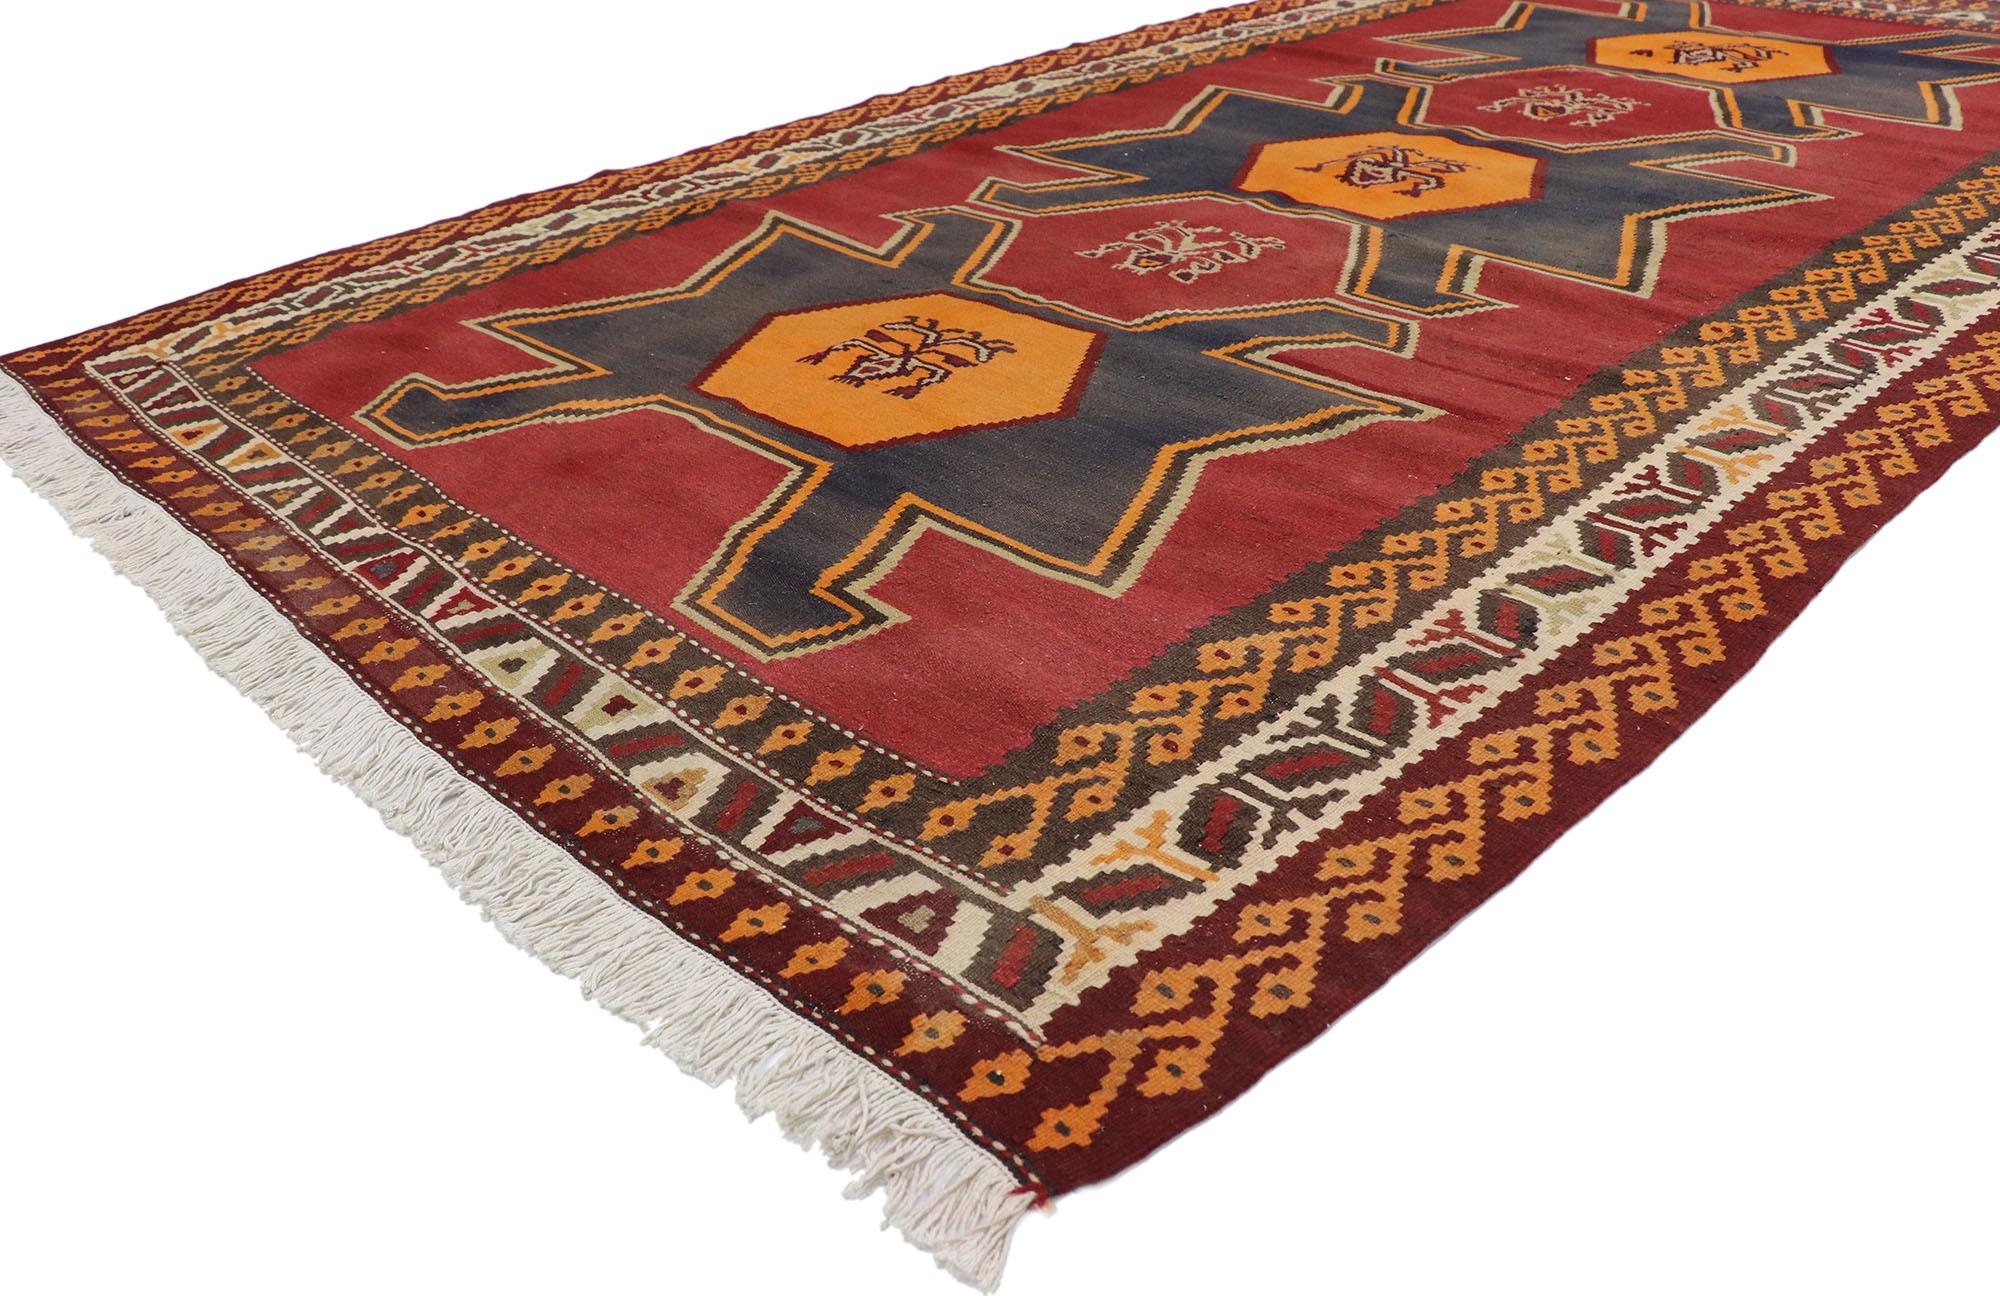 78036 Vieux tapis persan Shiraz Kilim avec style tribal 05'06 x 09'08. Plein de petits détails et un design expressif audacieux combiné avec des couleurs vibrantes et un style tribal, ce tapis kilim persan vintage en laine tissé à la main est une